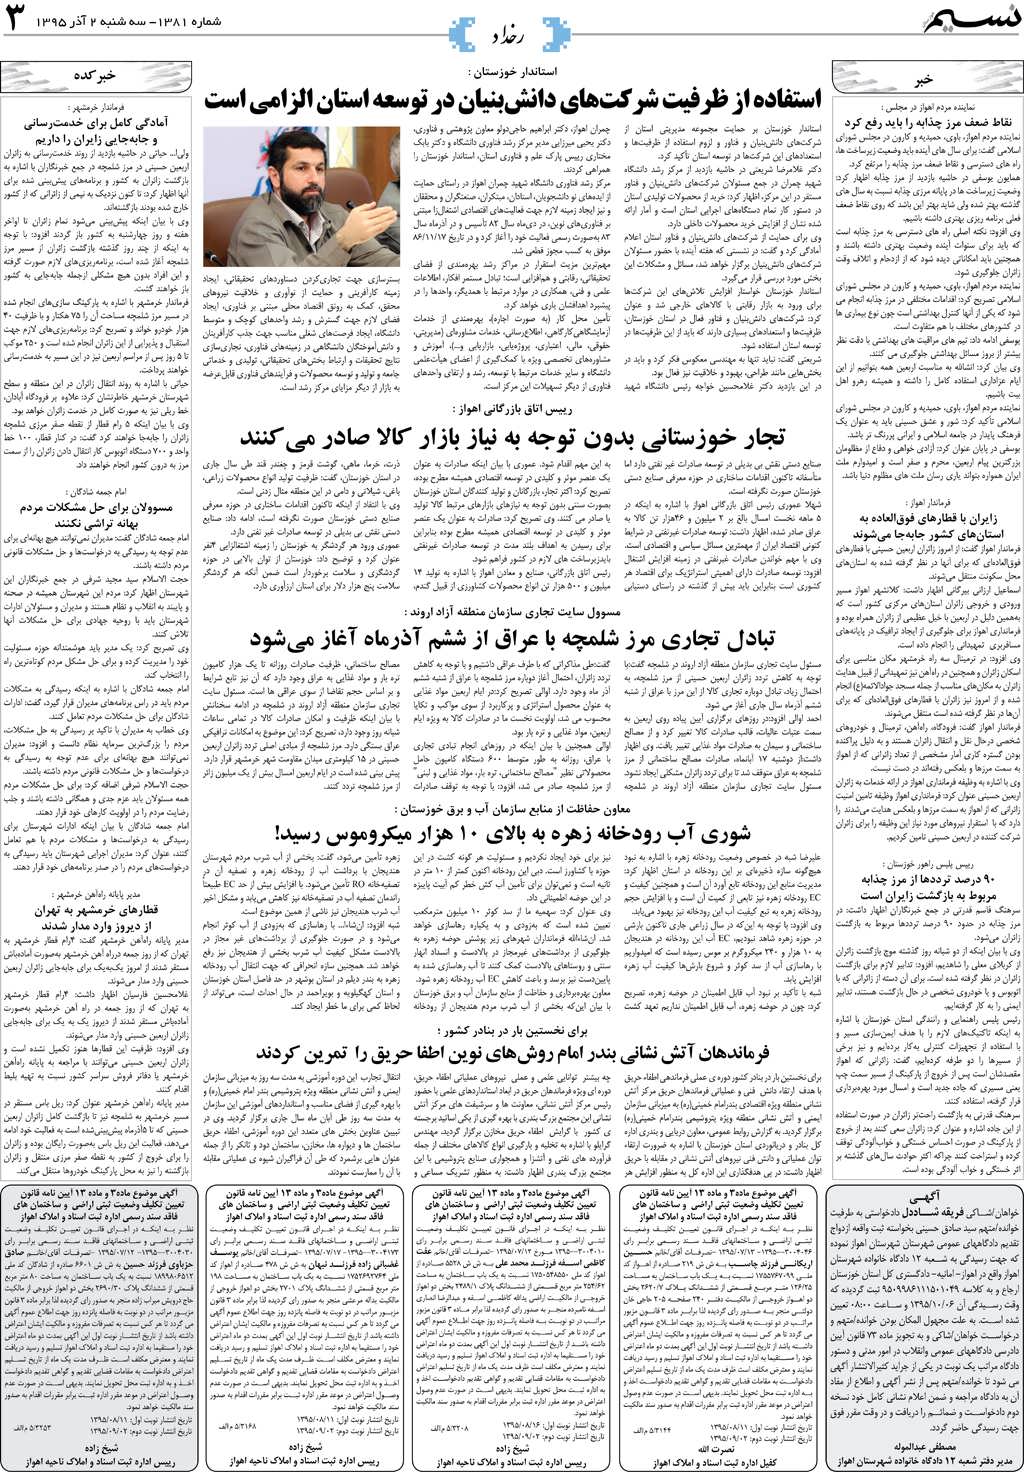 صفحه رخداد روزنامه نسیم شماره 1381